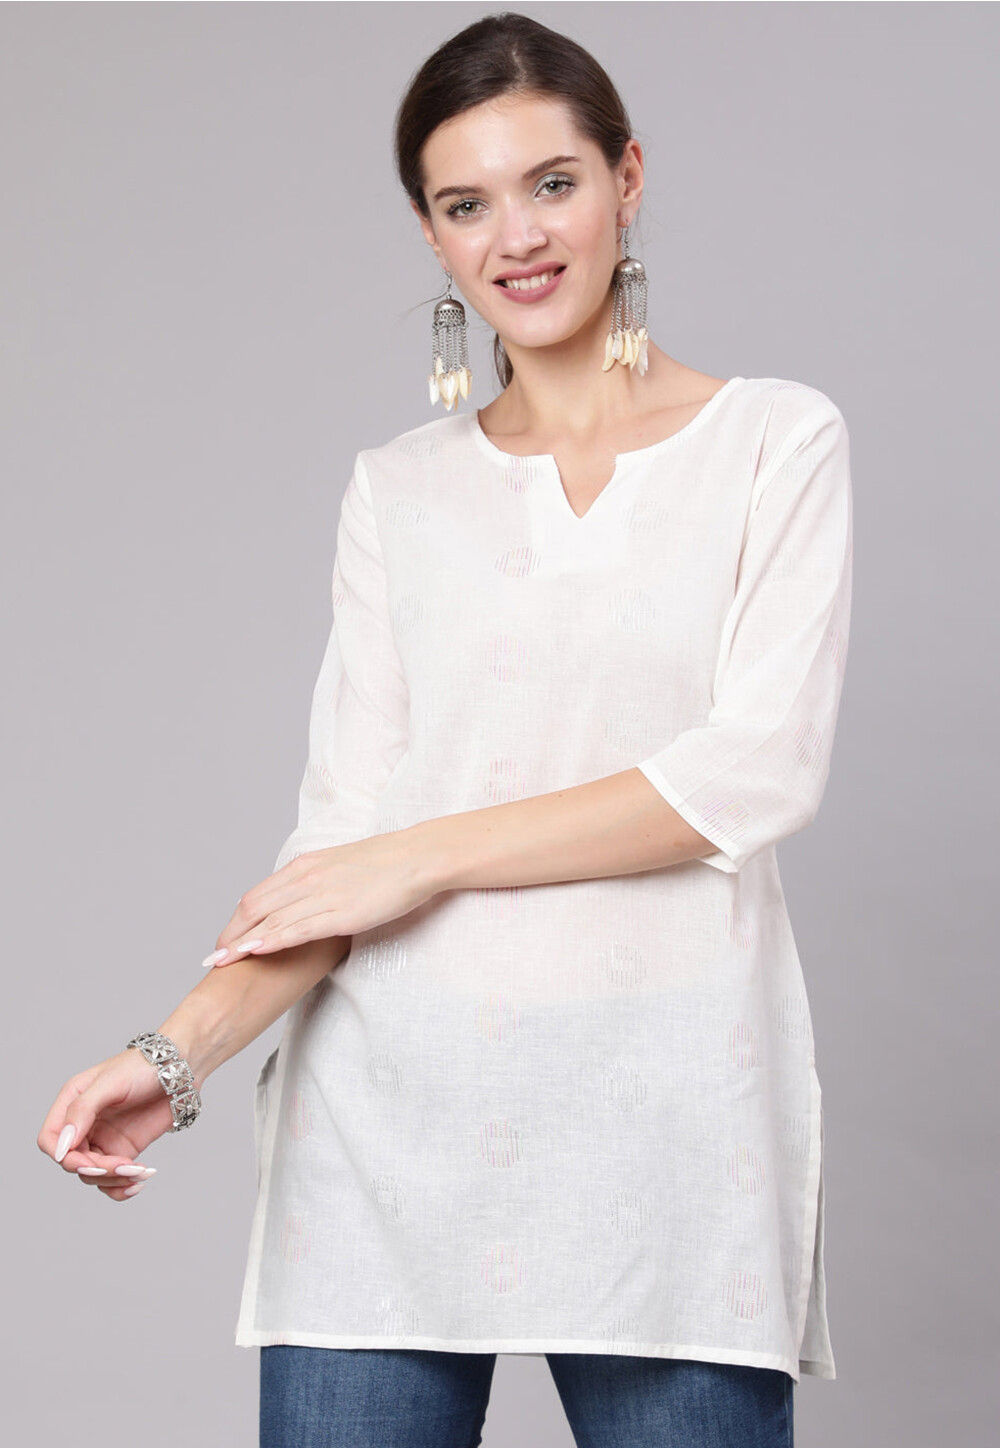 Buy White Cotton Kurti After Six Wear Online at Best Price | Cbazaar